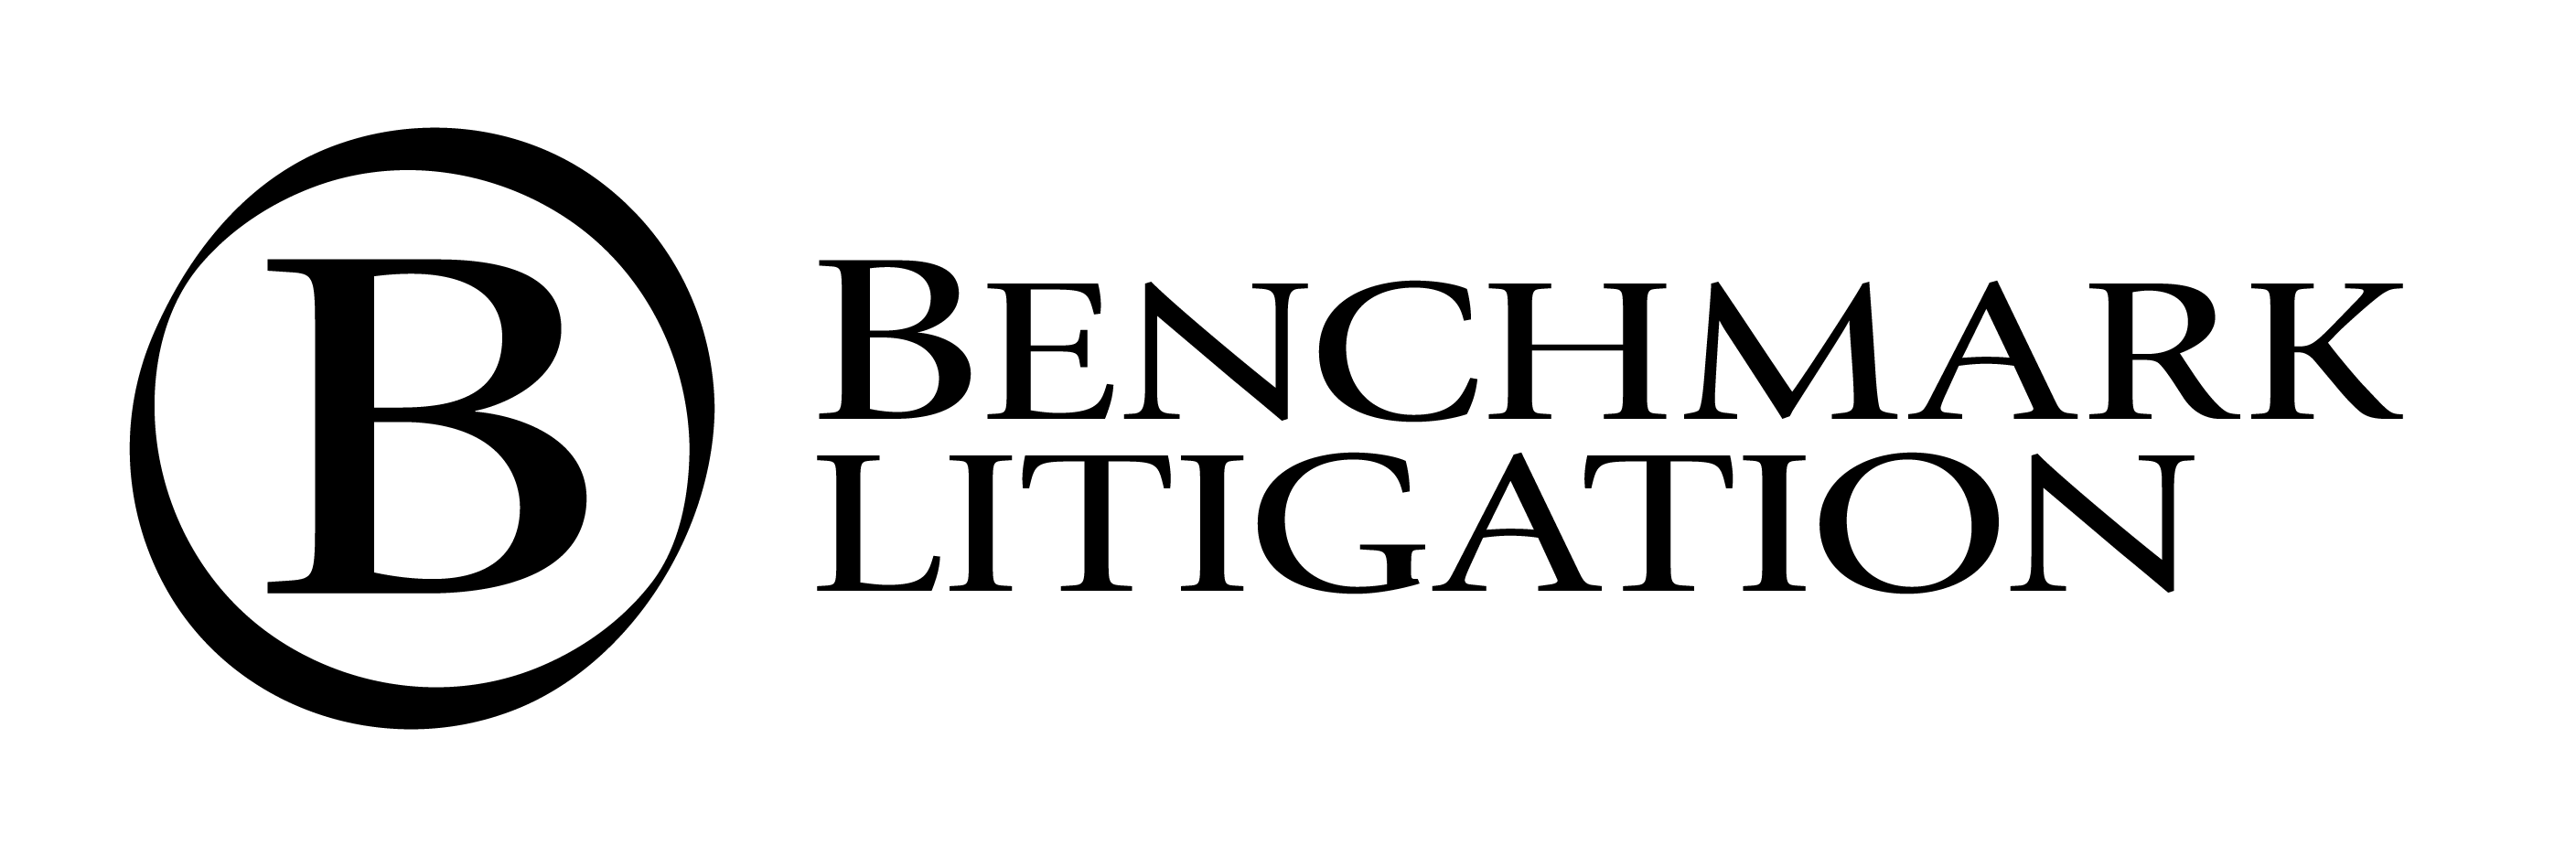 Benchmark-Litigation-logo.png